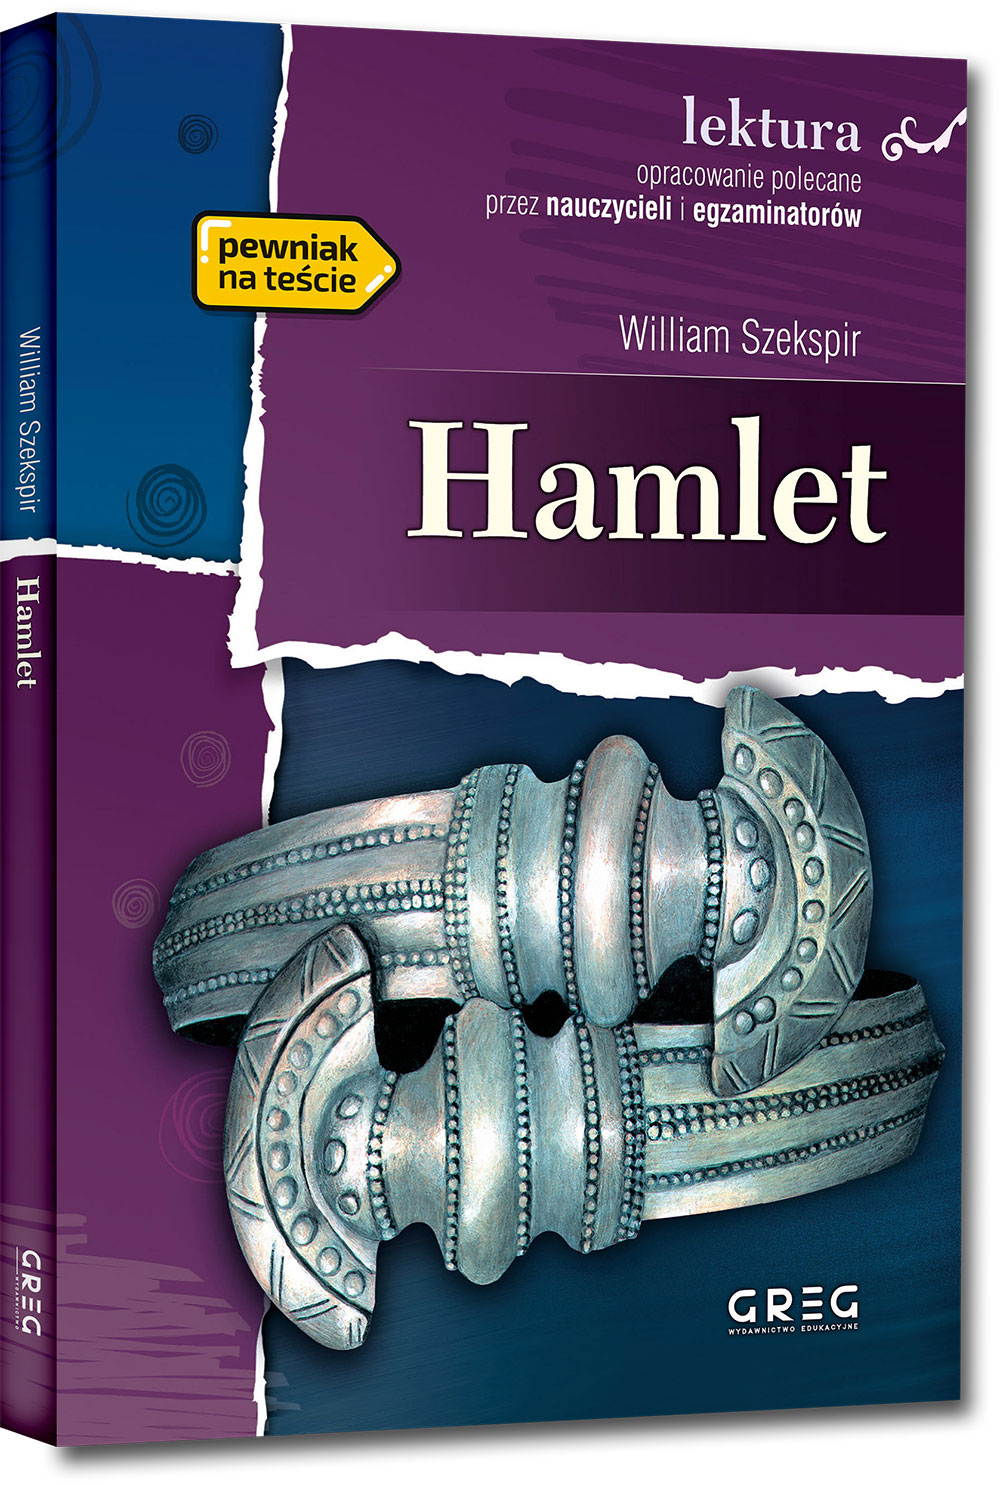 Okładka książki o tytule Hamlet autorstwa Williama Szekspira